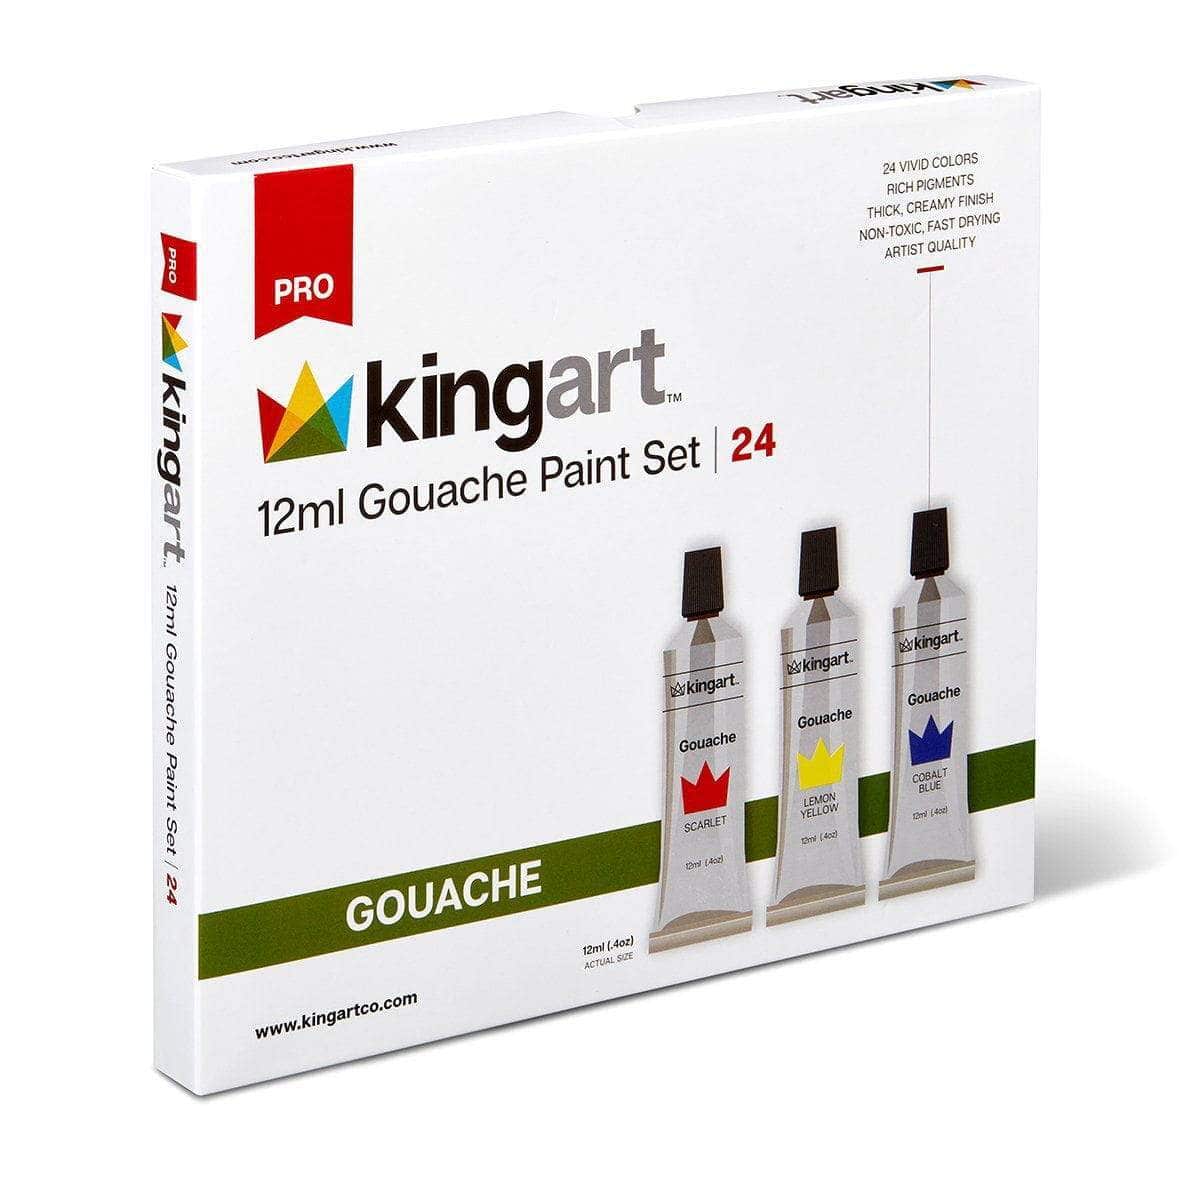 http://www.kingartco.com/cdn/shop/products/kingart-pro-kingart-pro-artist-gouache-paint-12ml-4oz-set-of-24-unique-colors-29461309587617_1200x1200.jpg?v=1641904592